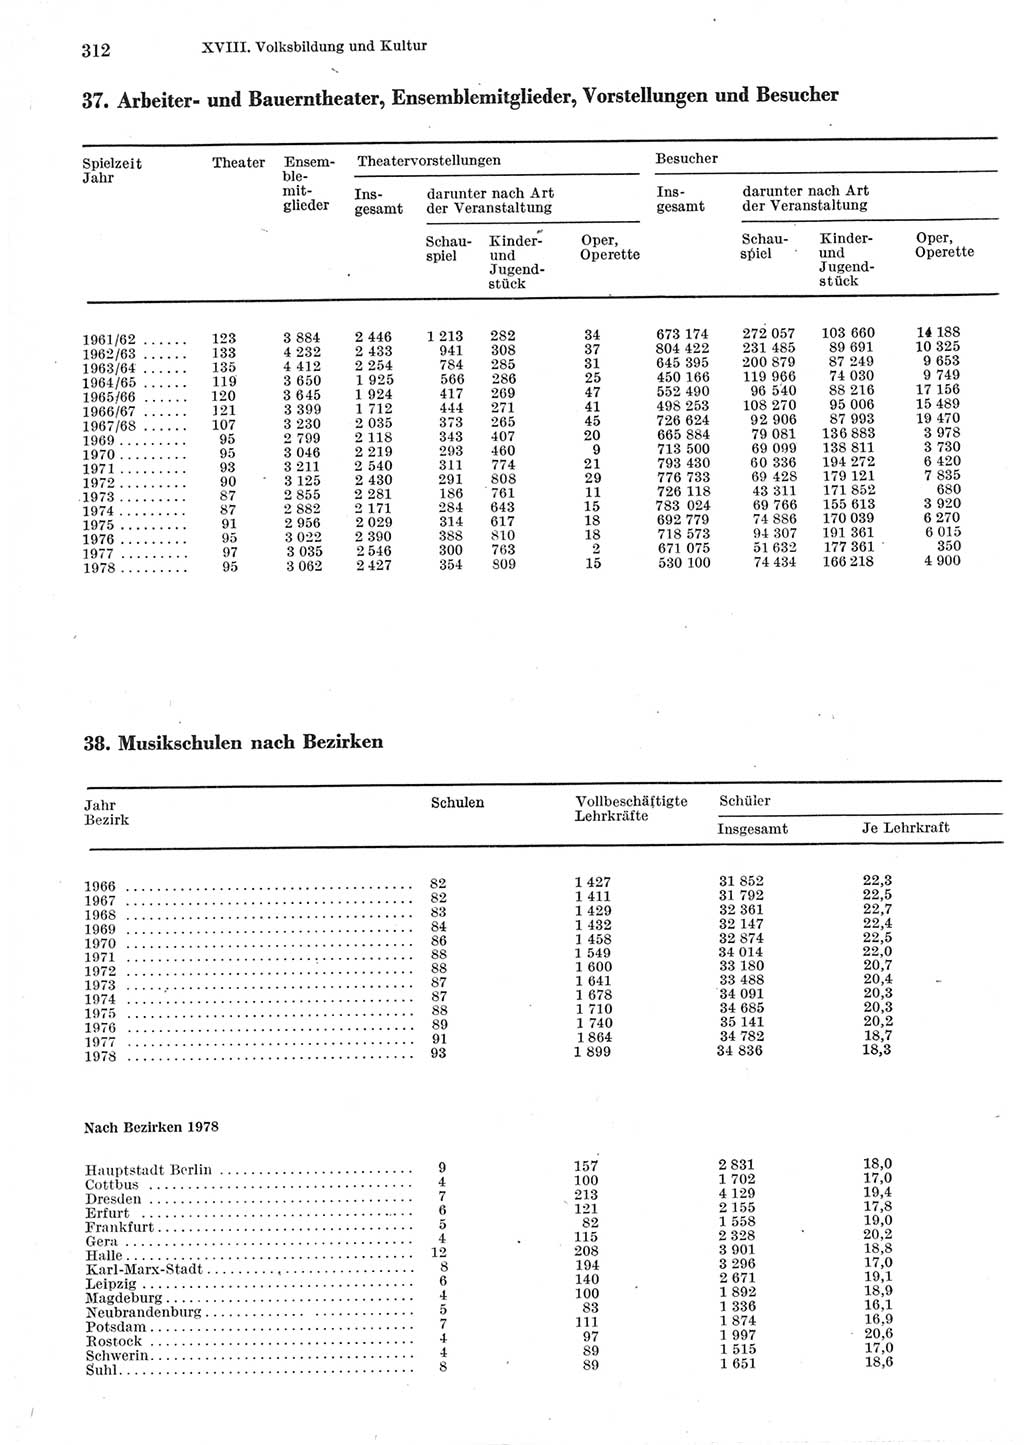 Statistisches Jahrbuch der Deutschen Demokratischen Republik (DDR) 1979, Seite 312 (Stat. Jb. DDR 1979, S. 312)